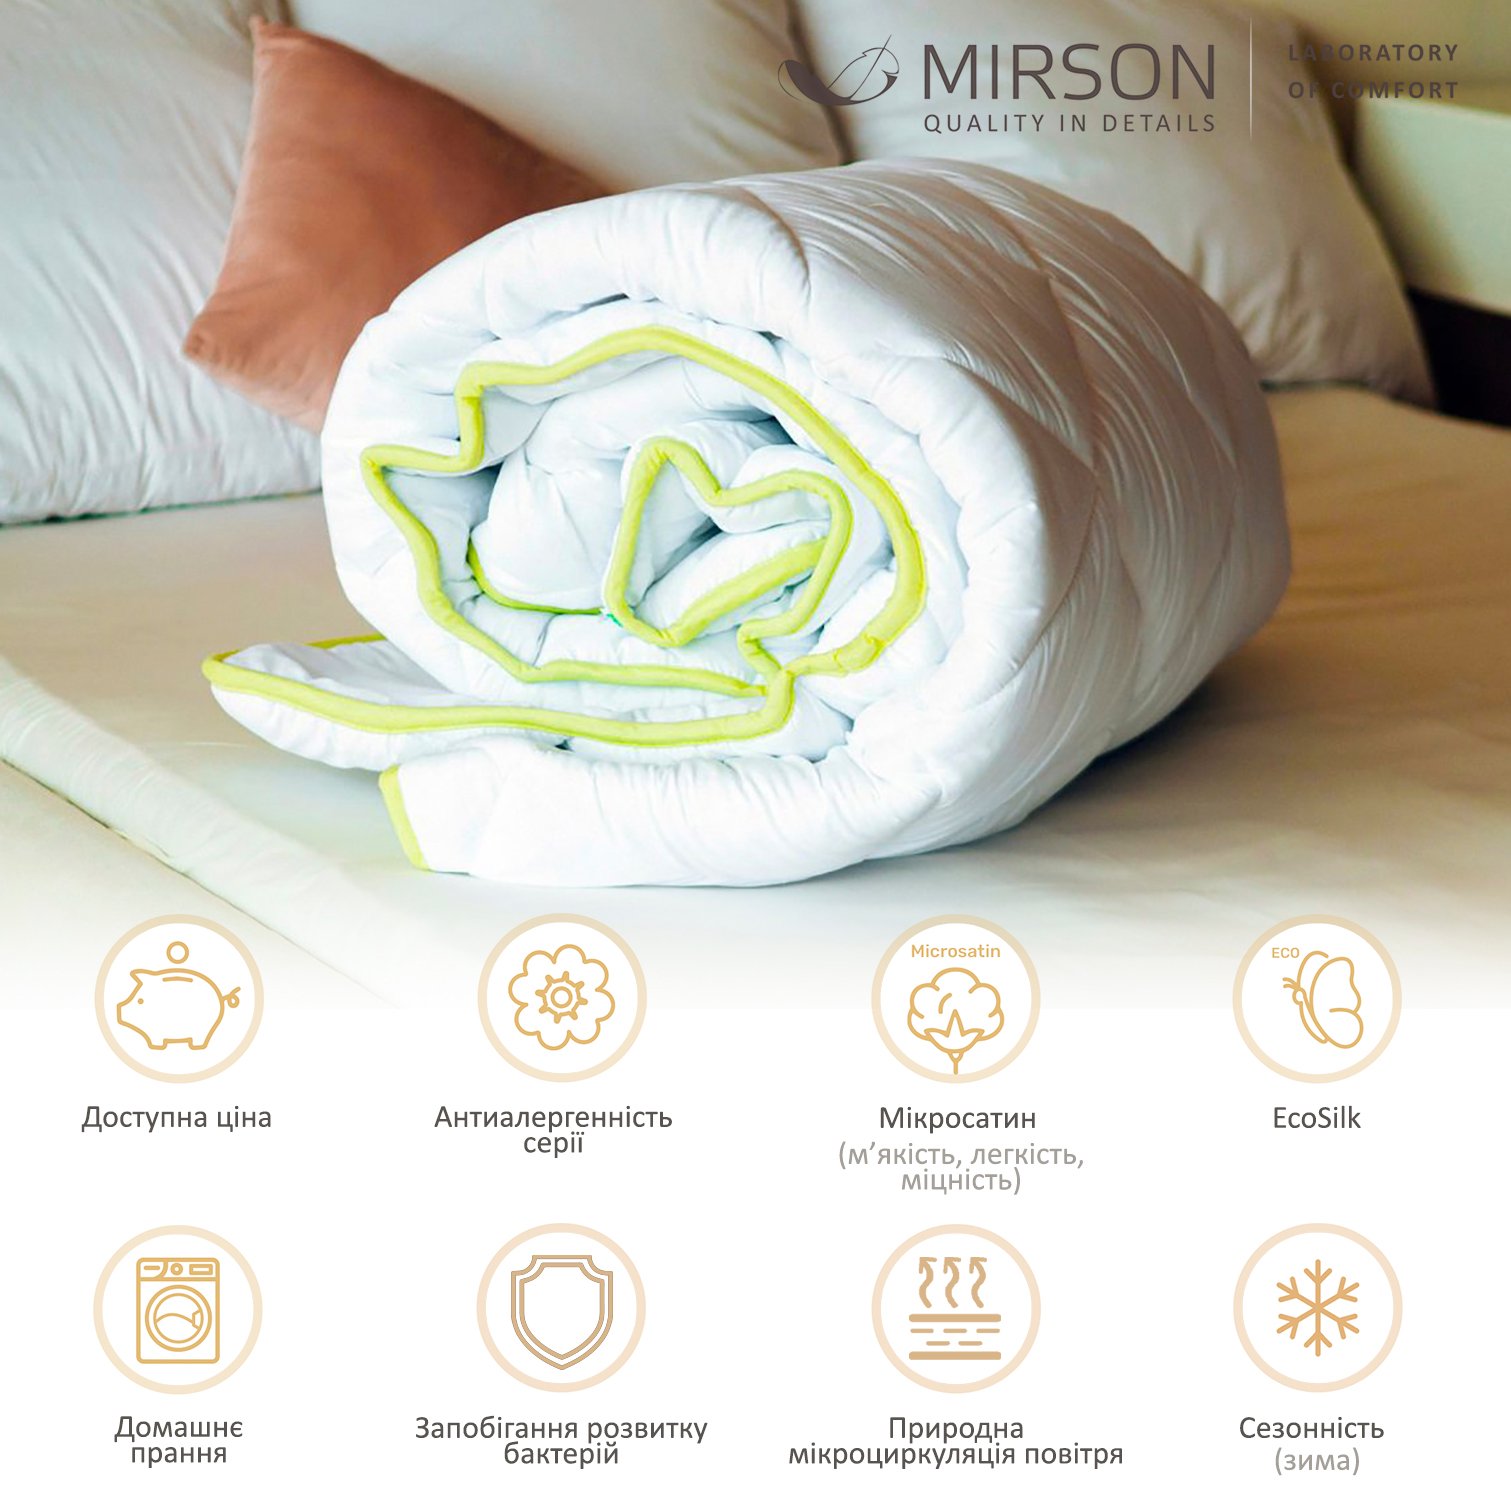 Одеяло антиаллергенное MirSon EcoSilk №003, зимнее, 110x140 см, белое (8062589) - фото 4